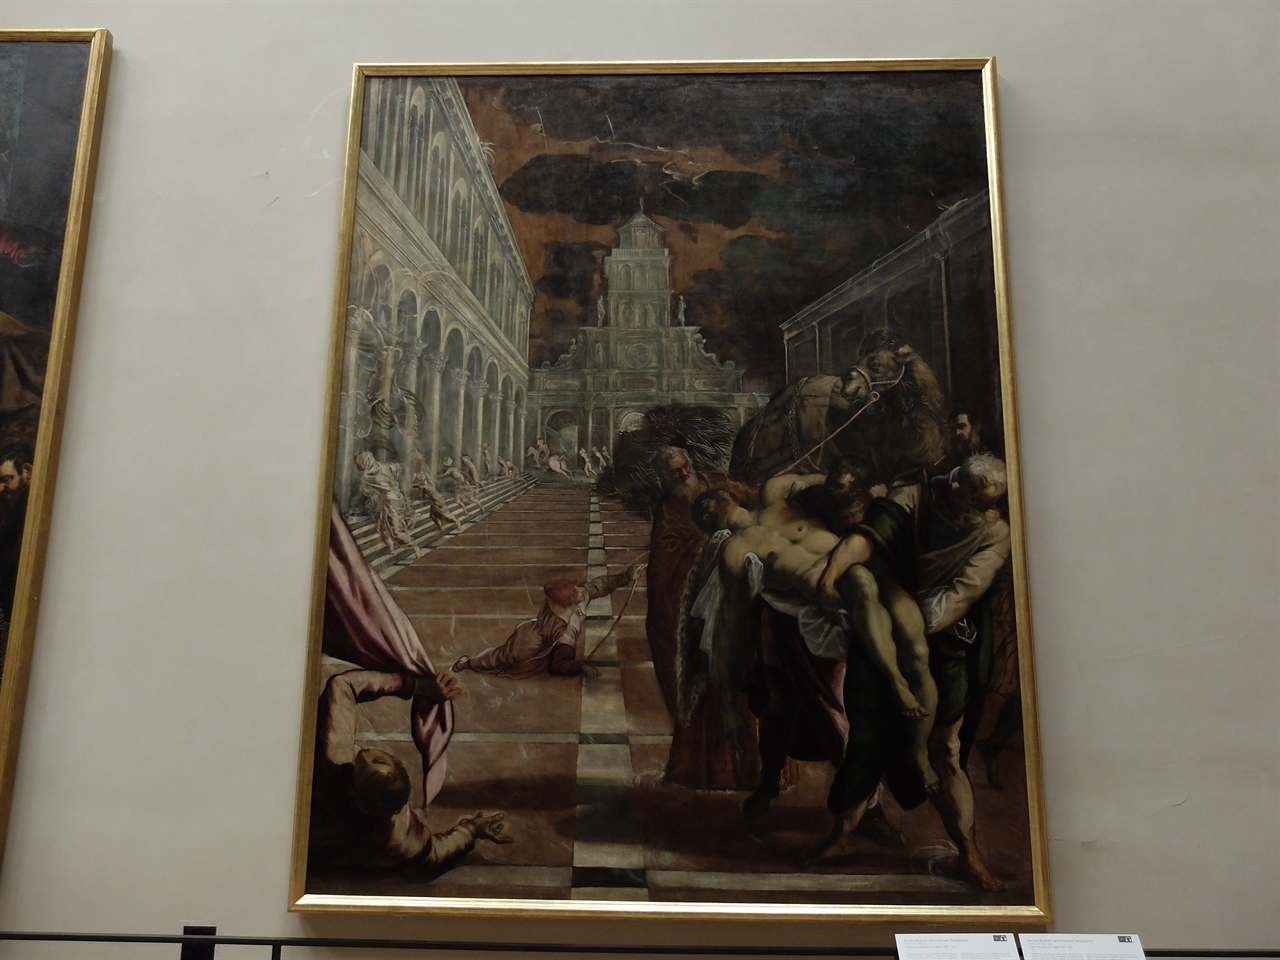 틴토레토, '성 마르코의 시신 피신', 베네치아 아카데미아 미술관. 베네치아의 수호 성인, 성 마르코의 시신을 알렉산드리아에서 베네치아까지 모셔오는 과정을 담은 틴토레토의 '성 마르코 연작' 중 한편입니다.